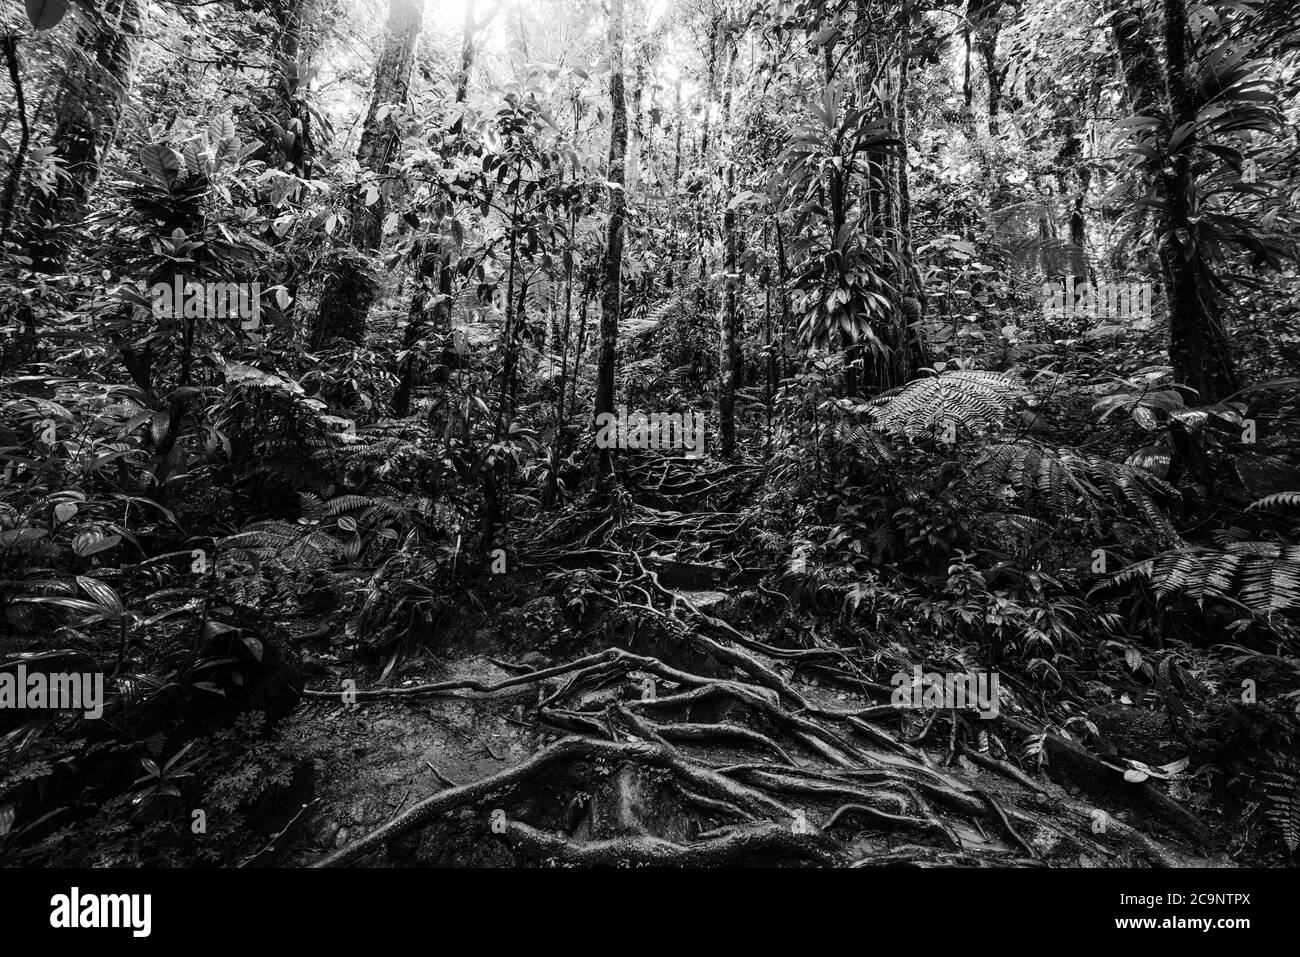 Wurzeln und tropische Vegetation in Basse Terre Dschungel, Guadeloupe Insel. Französisch-westindien, kleine Antillen. Schwarz-Weiß-Effekt Stockfoto